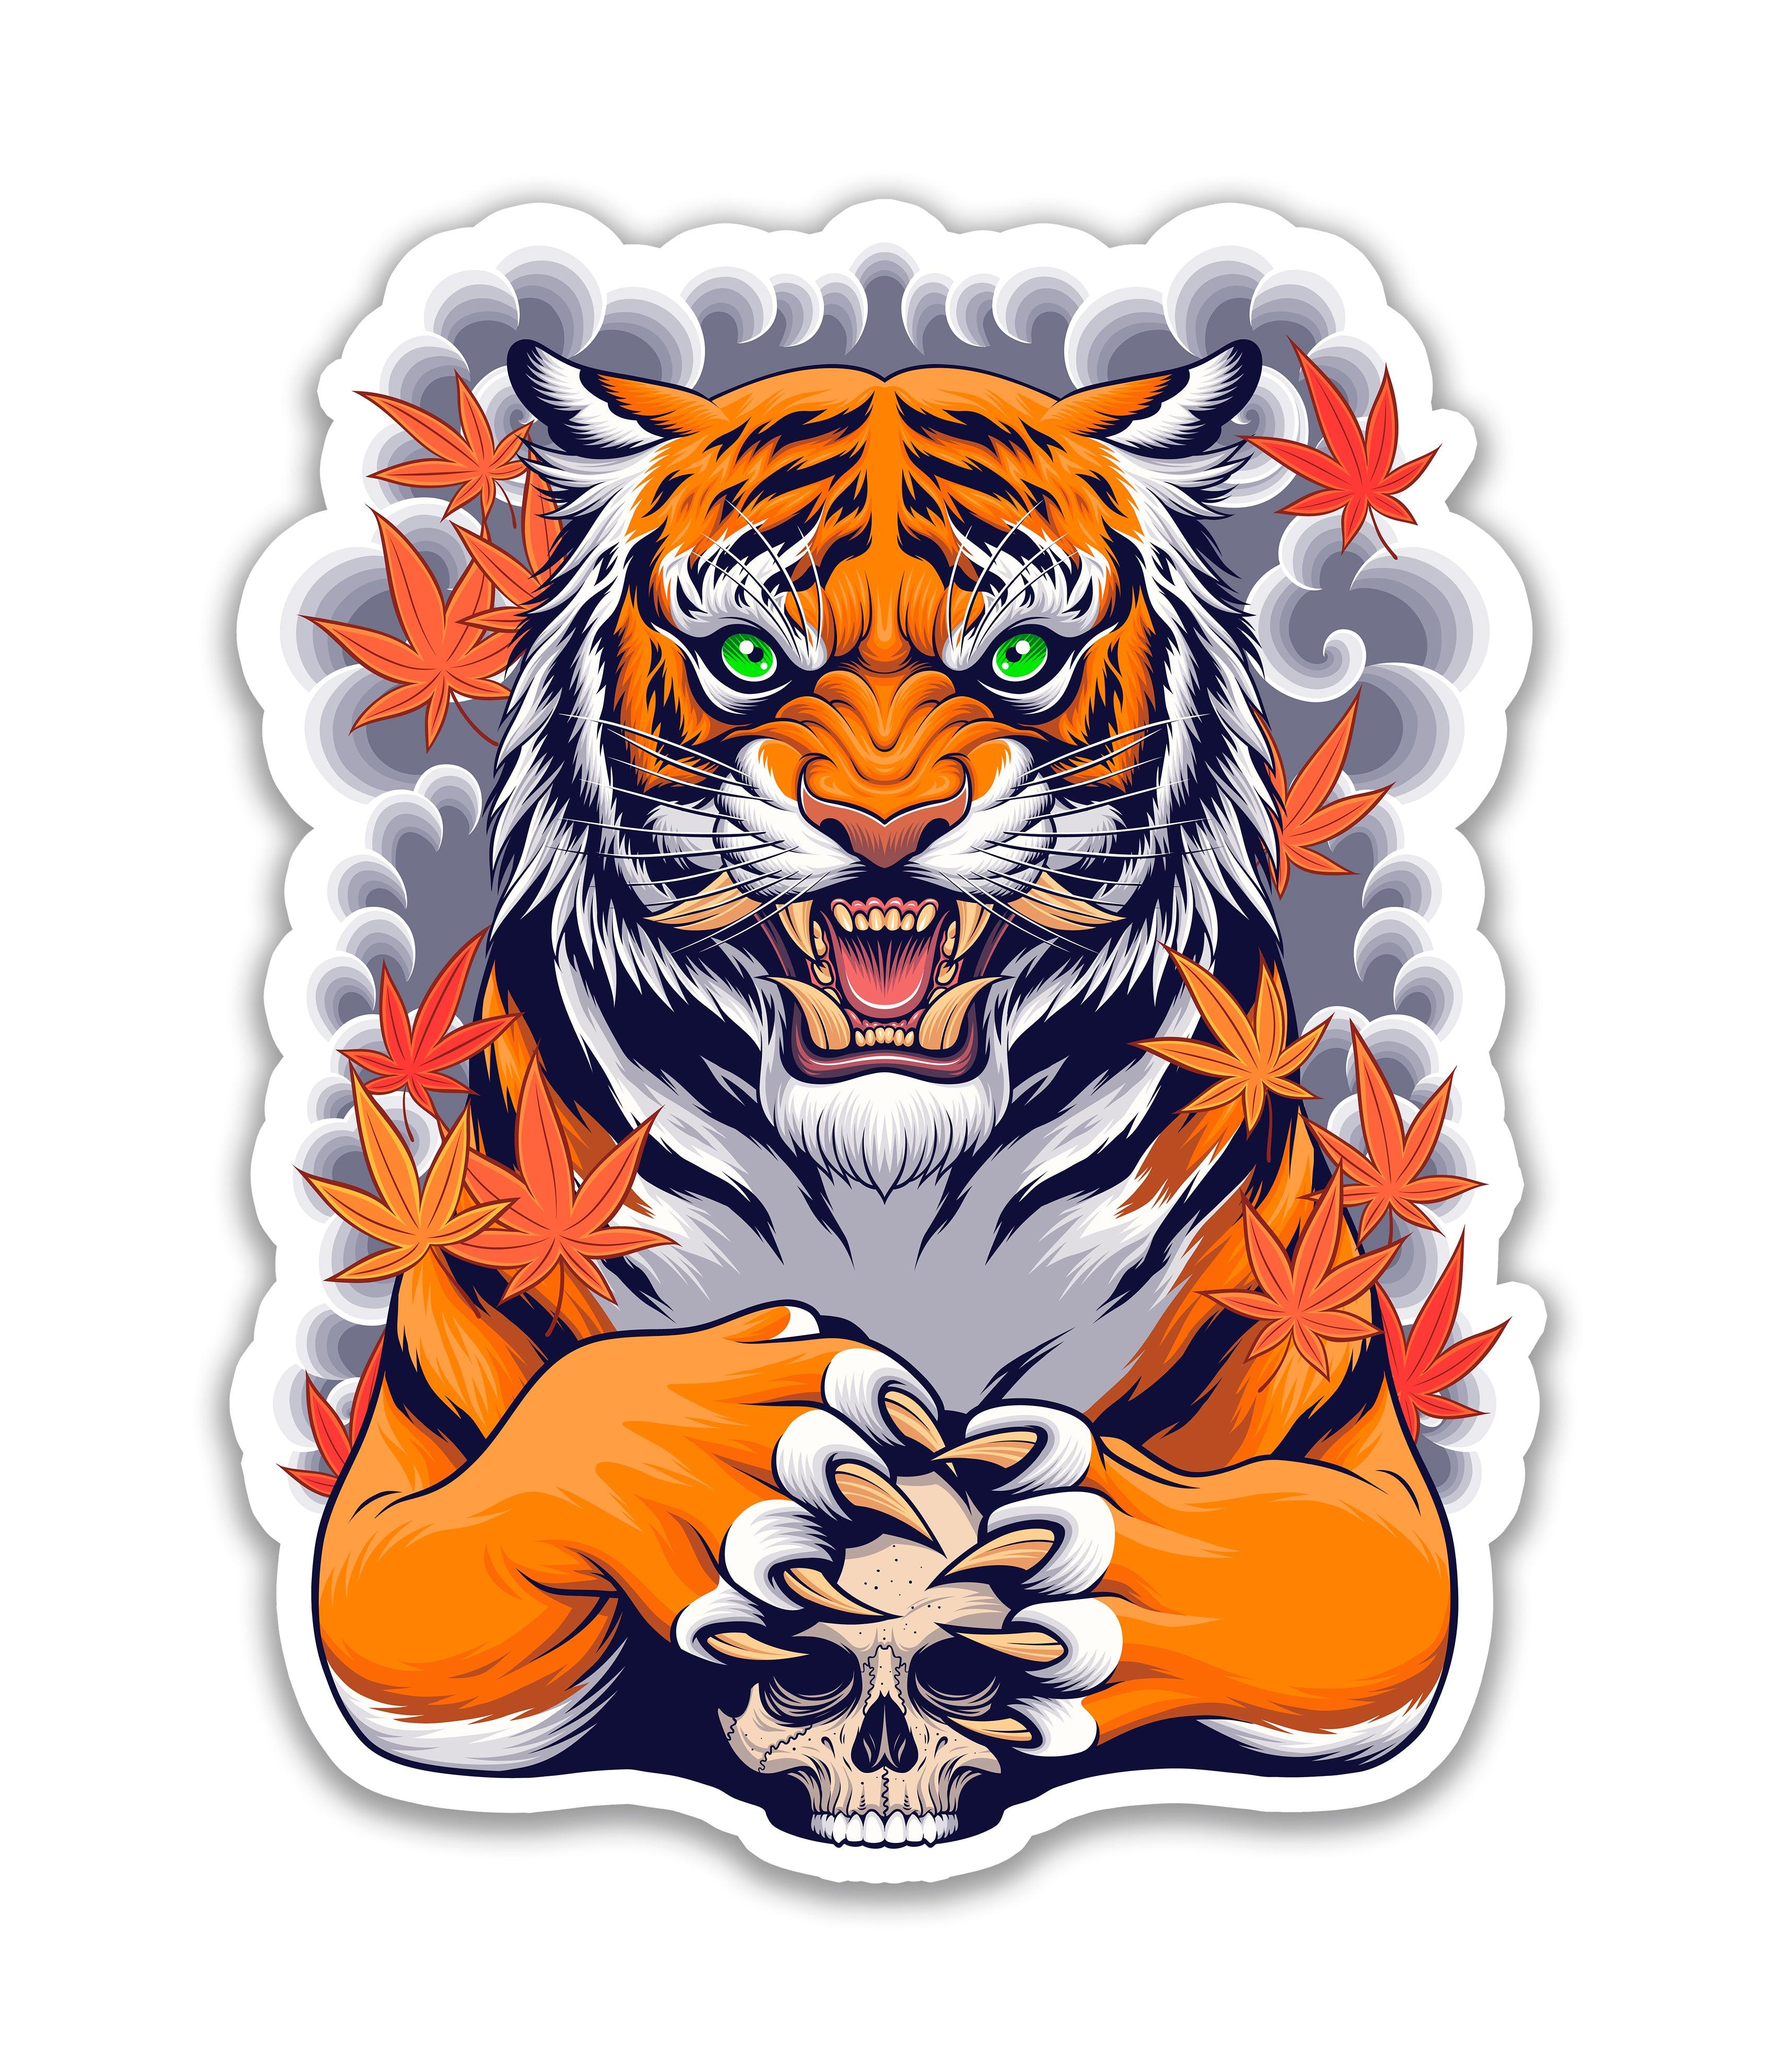 Tigre e o Crânio - Rei do Sticker